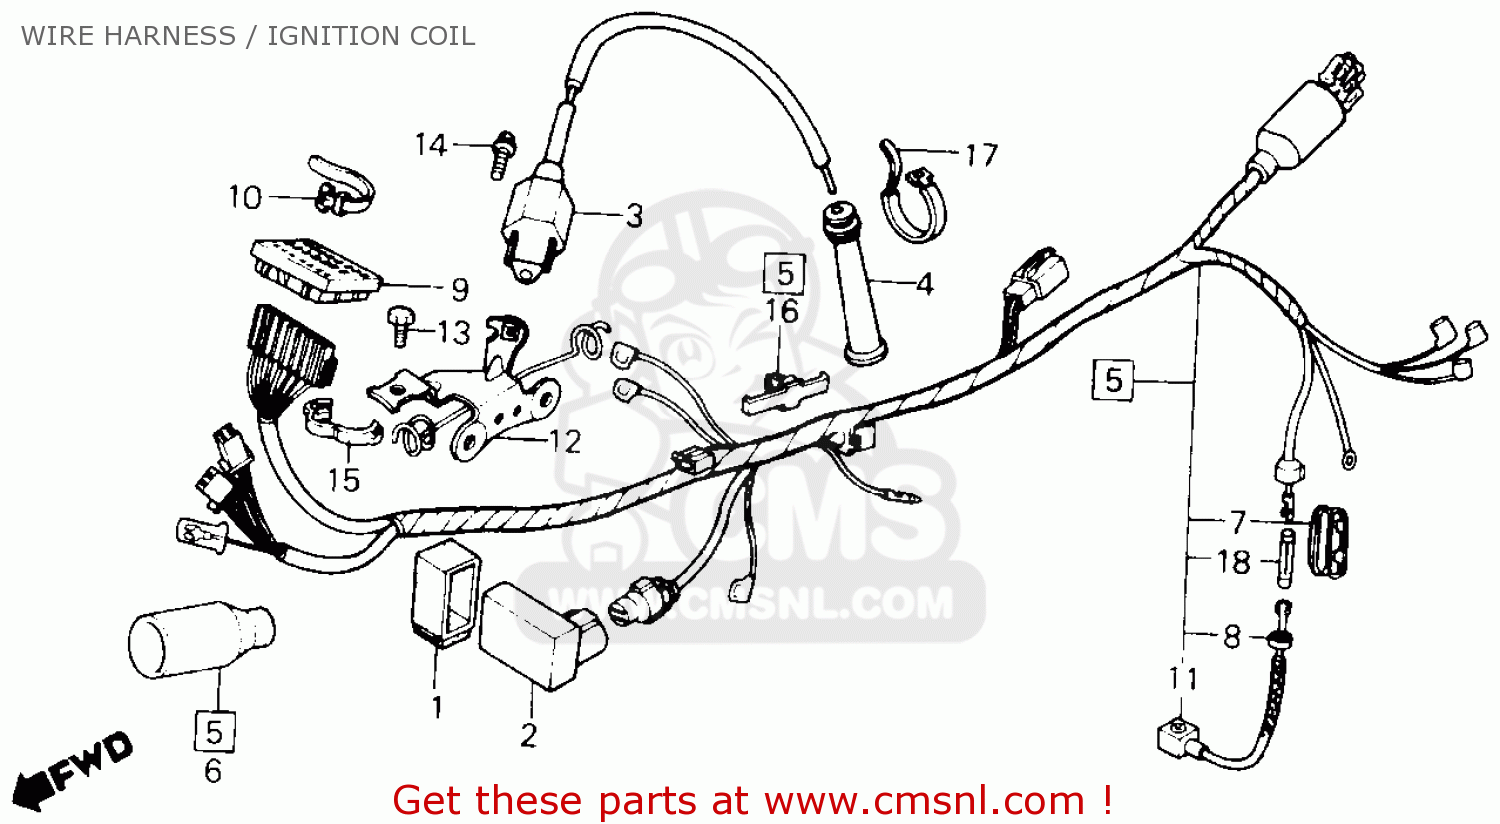 1983 Honda xl600r wiring diagram #1